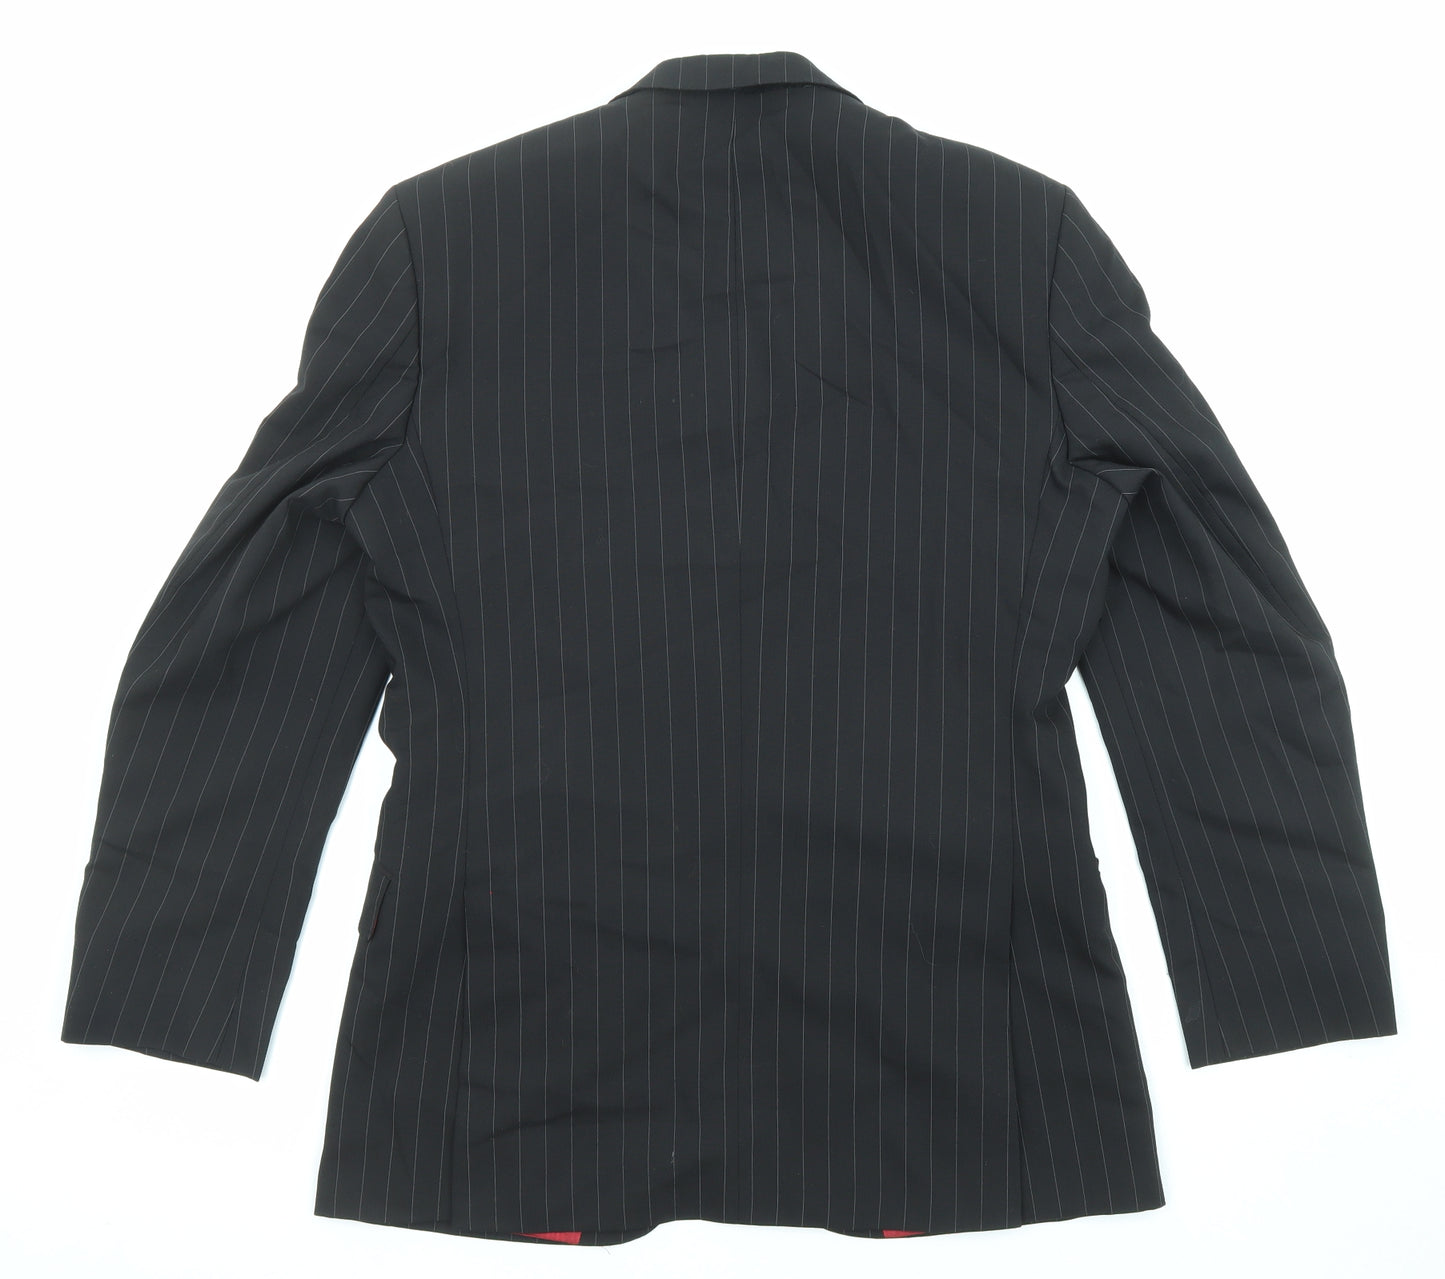 Limehaus Mens Black Striped Wool Jacket Suit Jacket Size 38 Regular